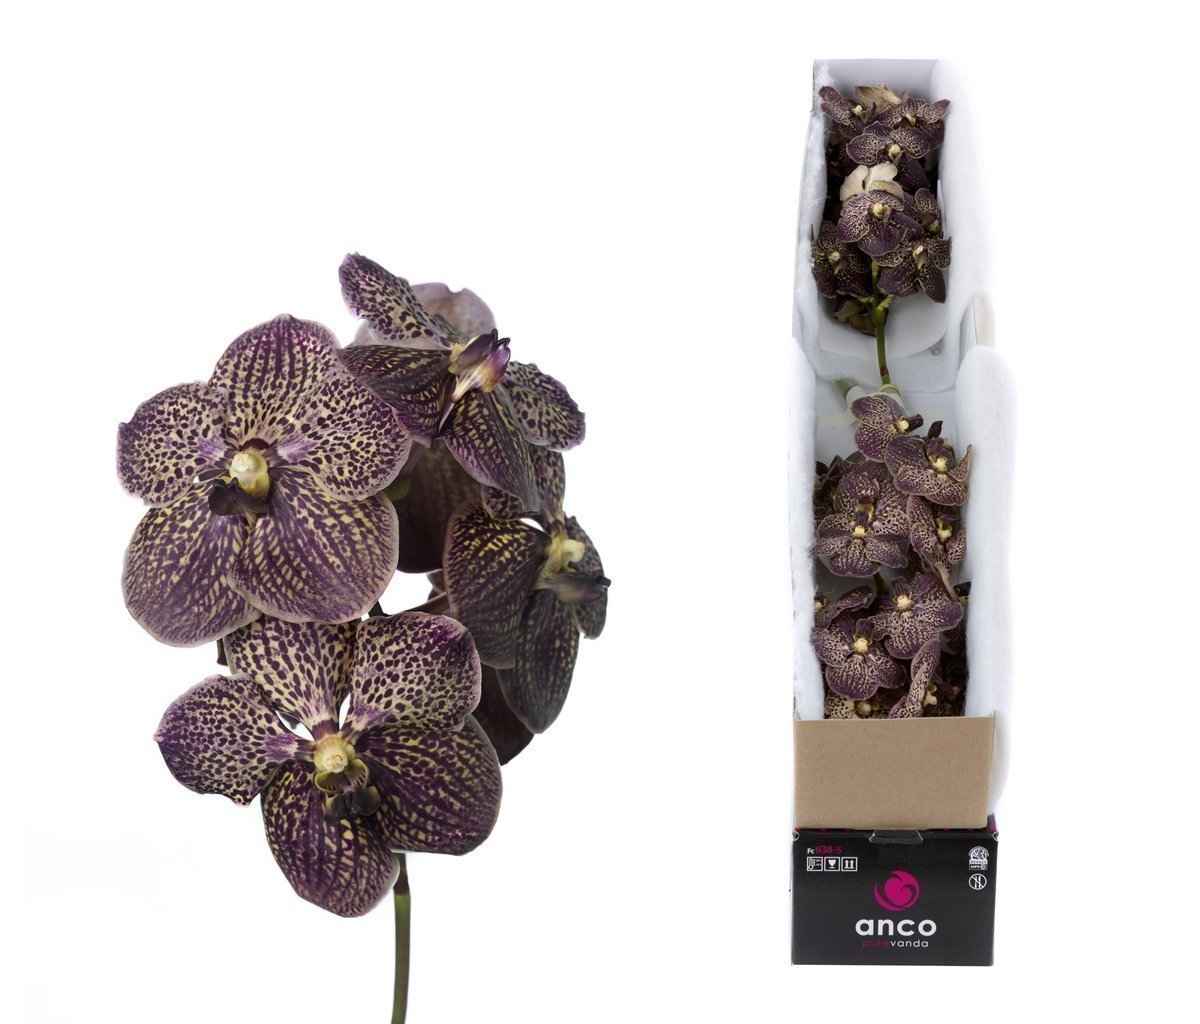 Срезанные цветы оптом Vanda sunanda chocolate brown per stem от 8шт. из Голландии с доставкой по России